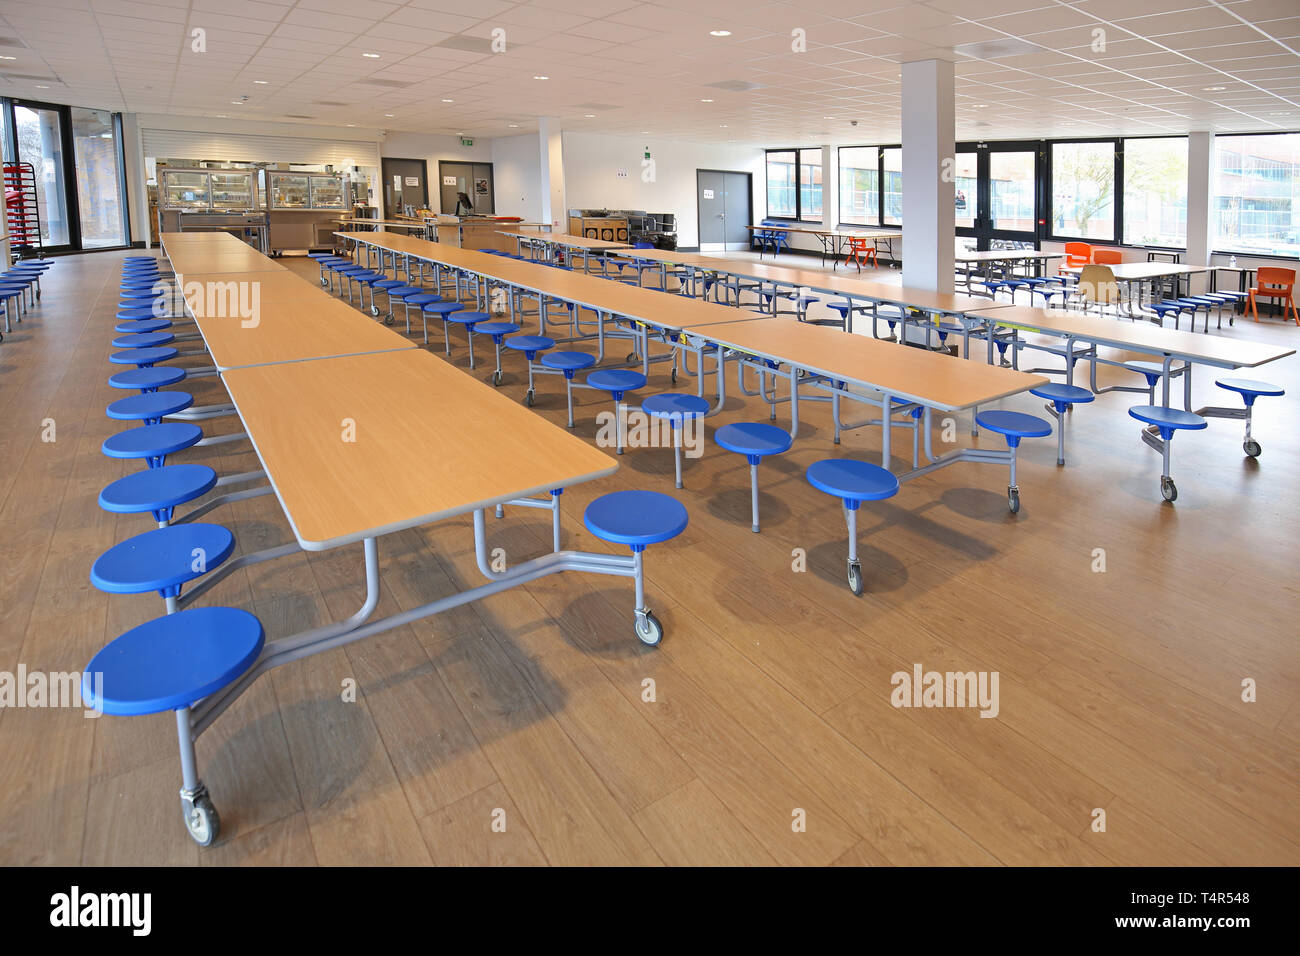 Speisesaal in einem neuen Academy School, West London, UK. Zeigt Klapptische an der richtigen Stelle. Gebäude wurde von einem 1970er Jahren gebaute Bürohaus umgewandelt. Stockfoto